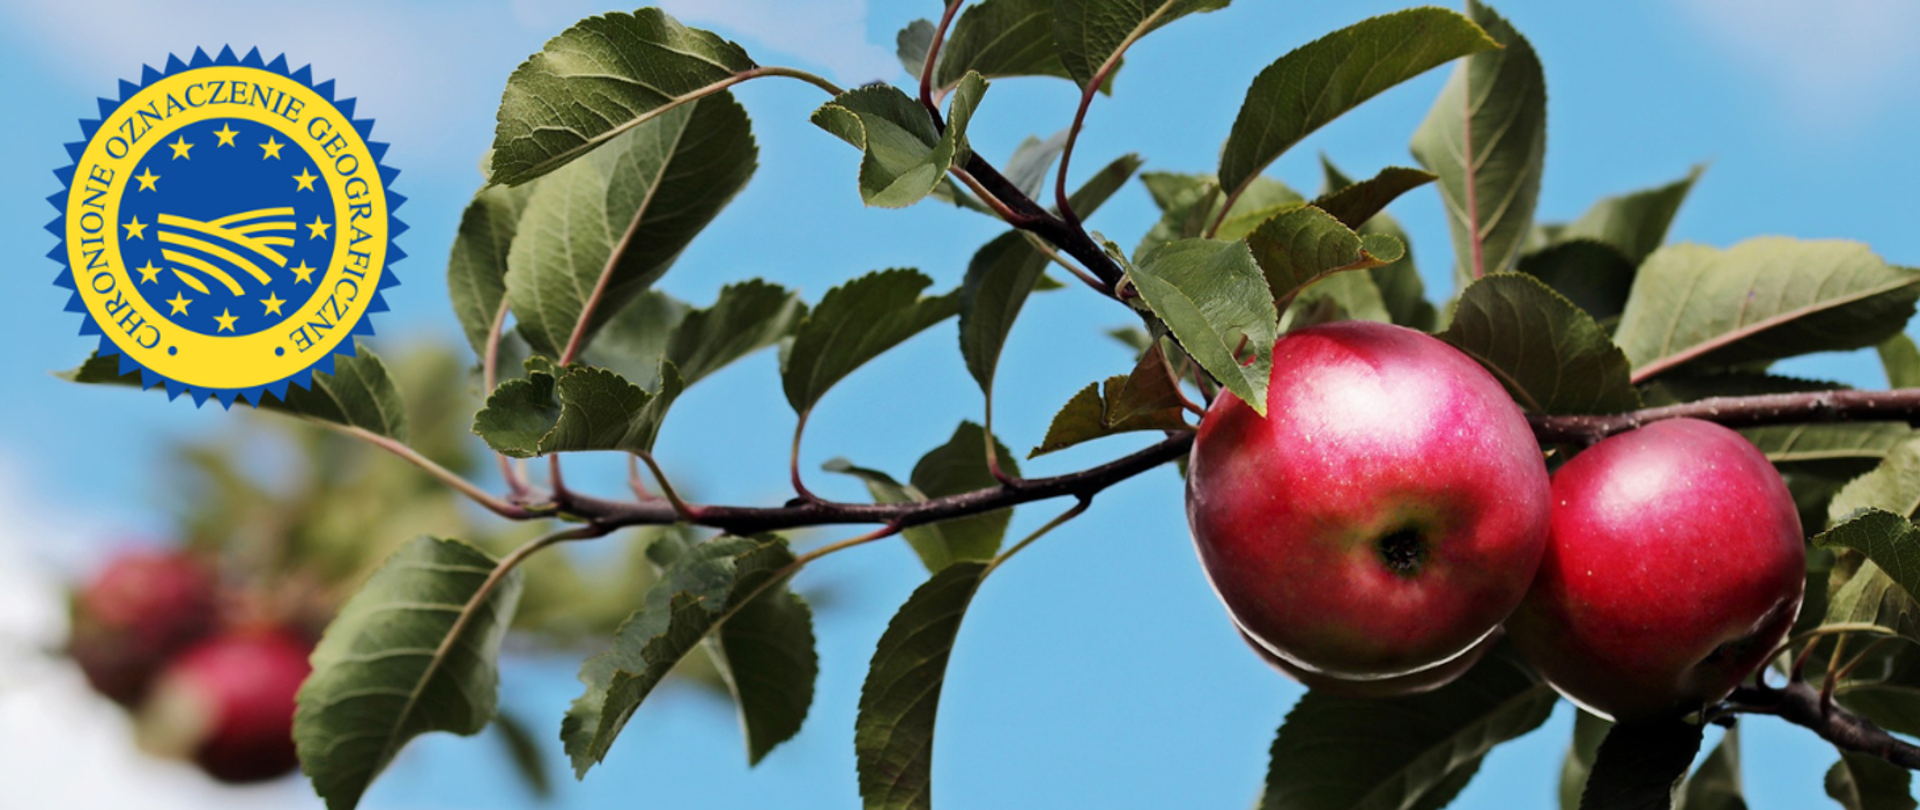 Gałązka z dwoma czerwonymi jabłkami na tle błękitnego nieba. W lewym górnym rogu logo ChOG
